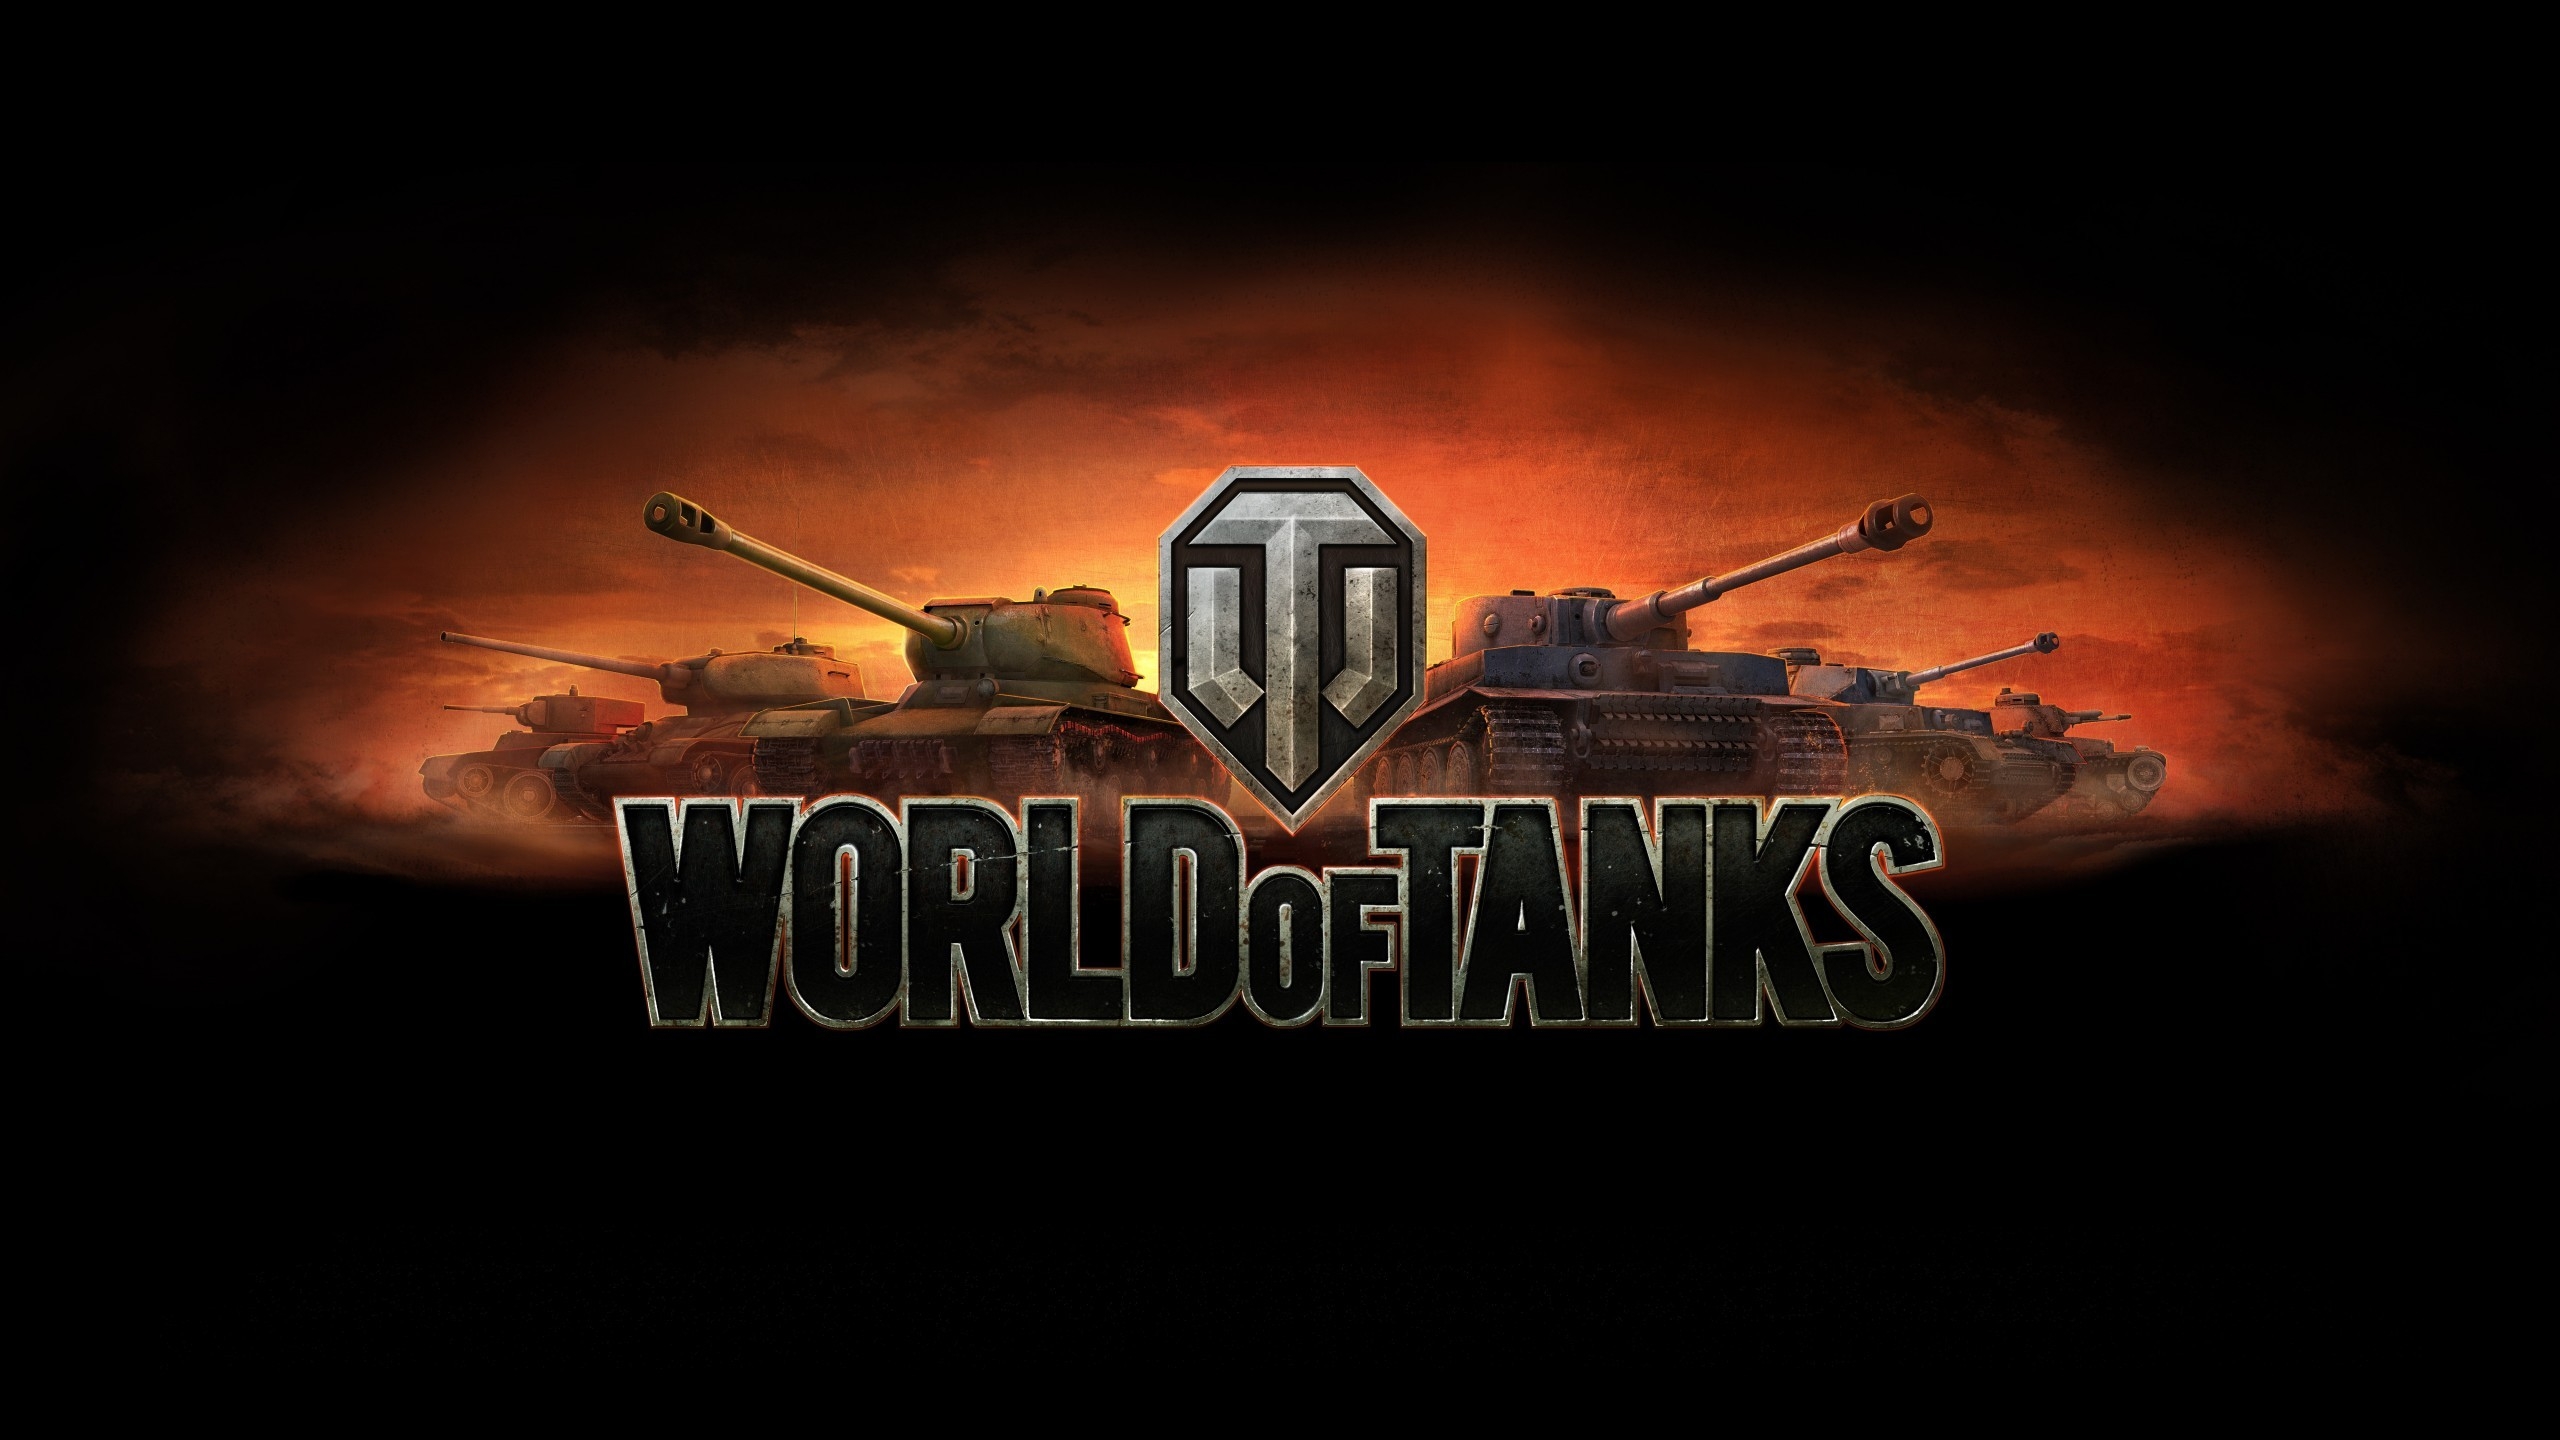 World of Tanks Poster for 2560x1440 HDTV resolution